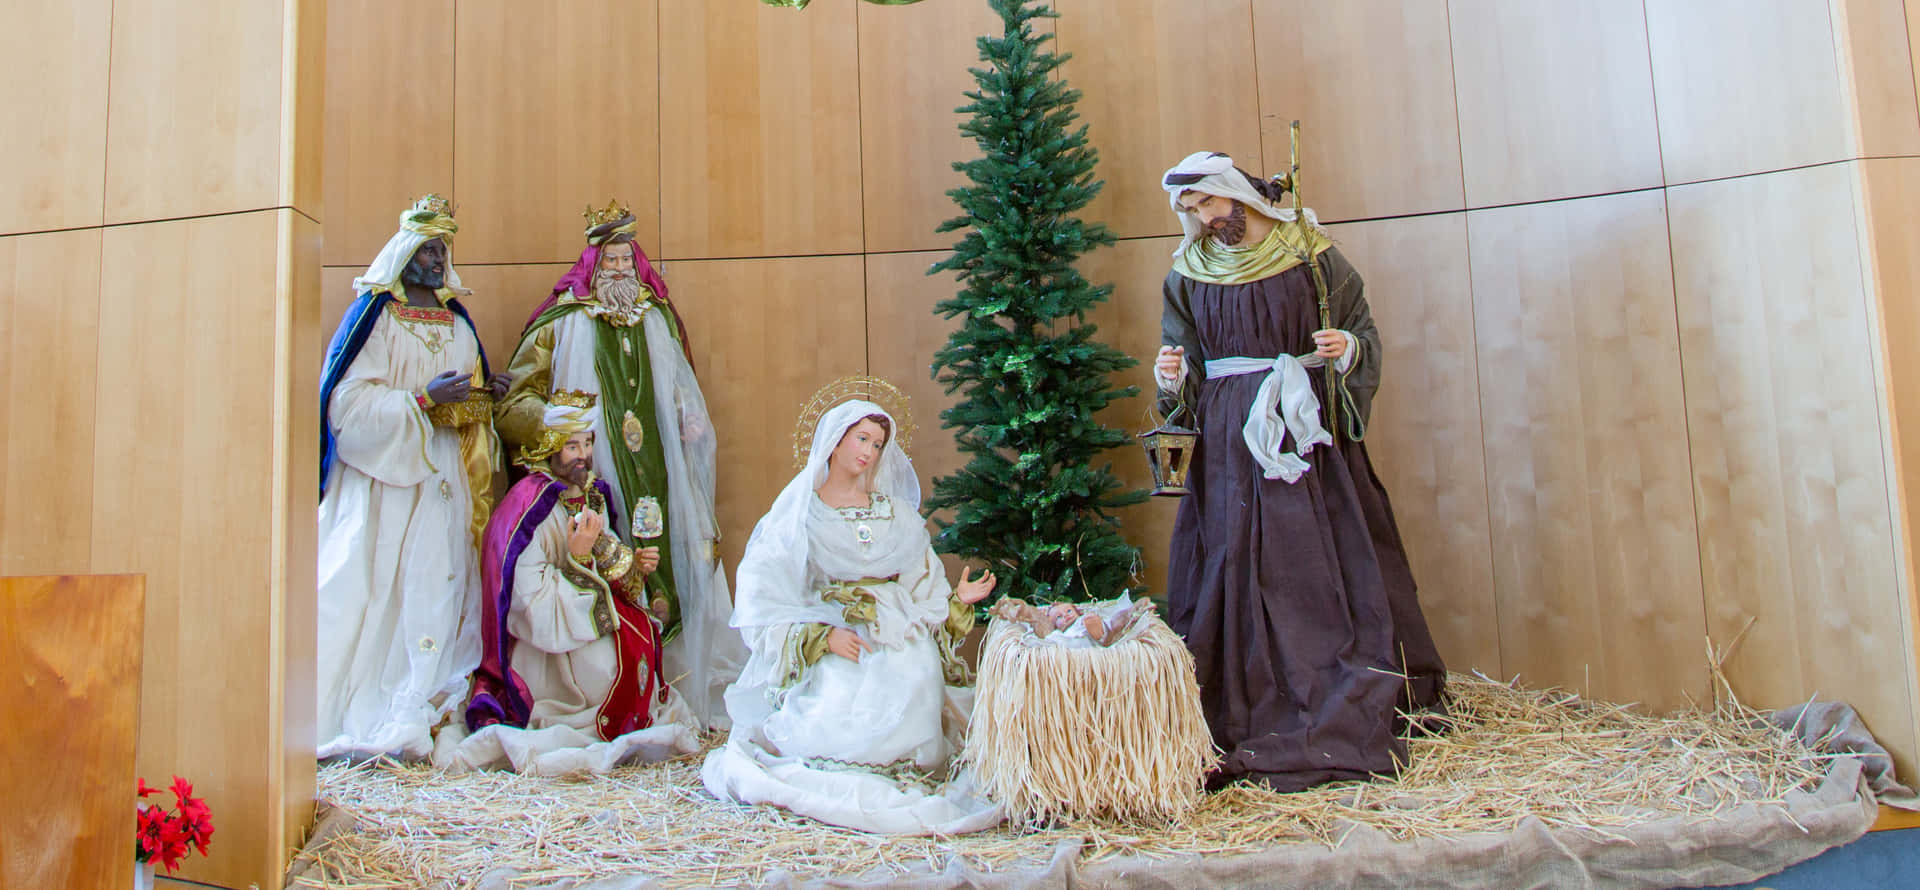 Celebrael Nacimiento De Jesús Con Esta Hermosa Escena De La Natividad.